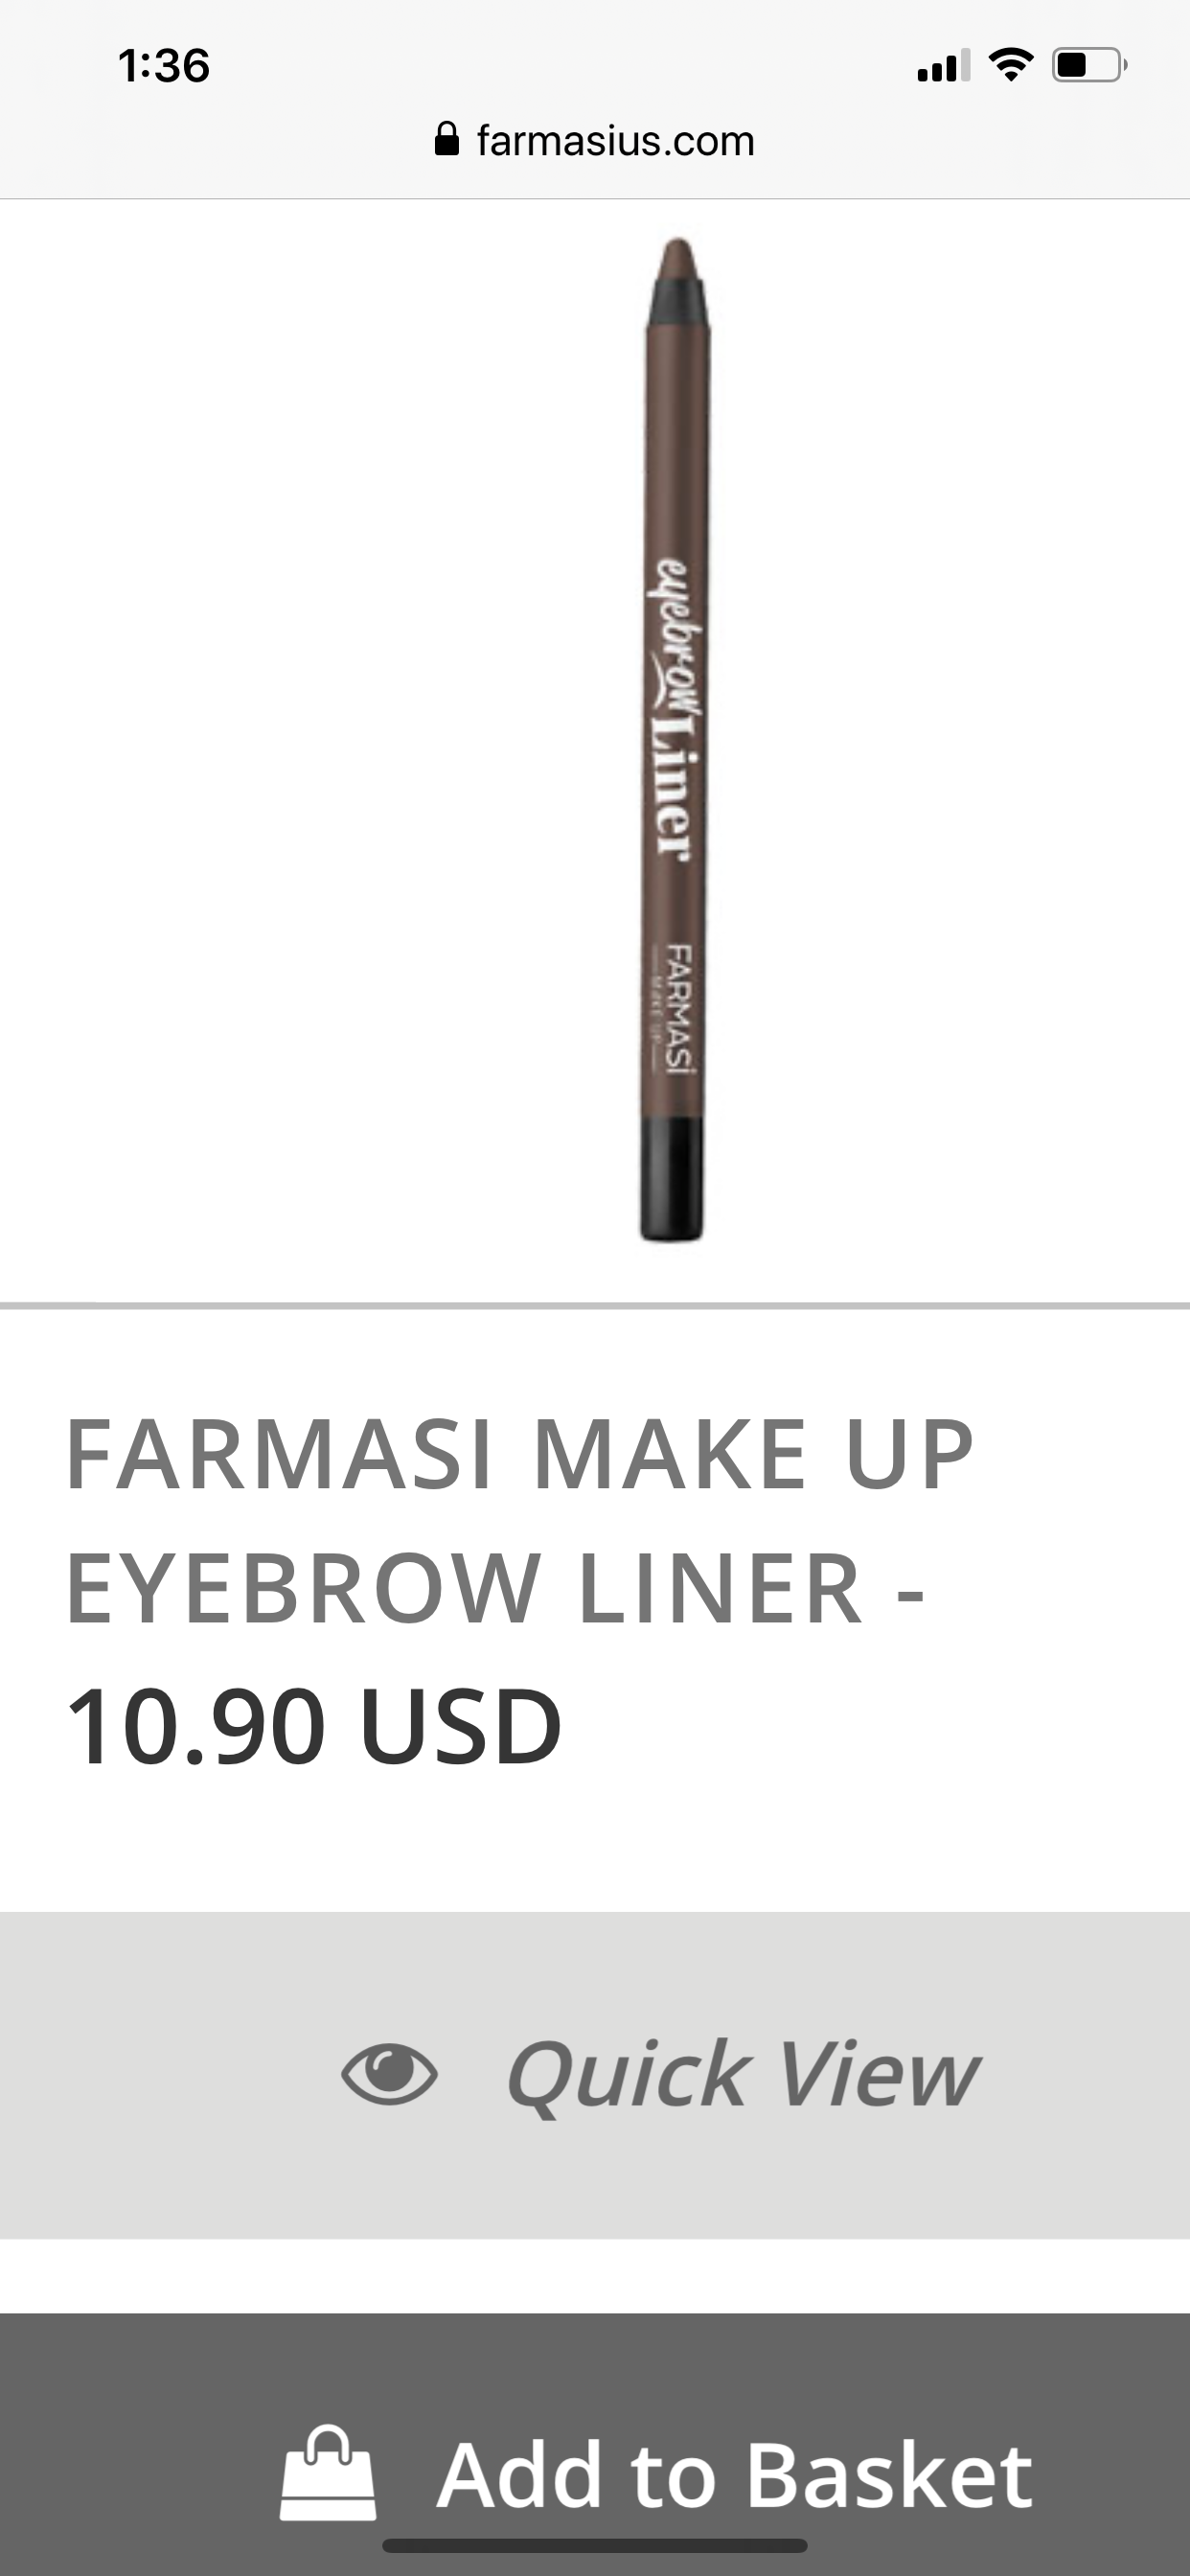 Farmasi Eye brow pencil